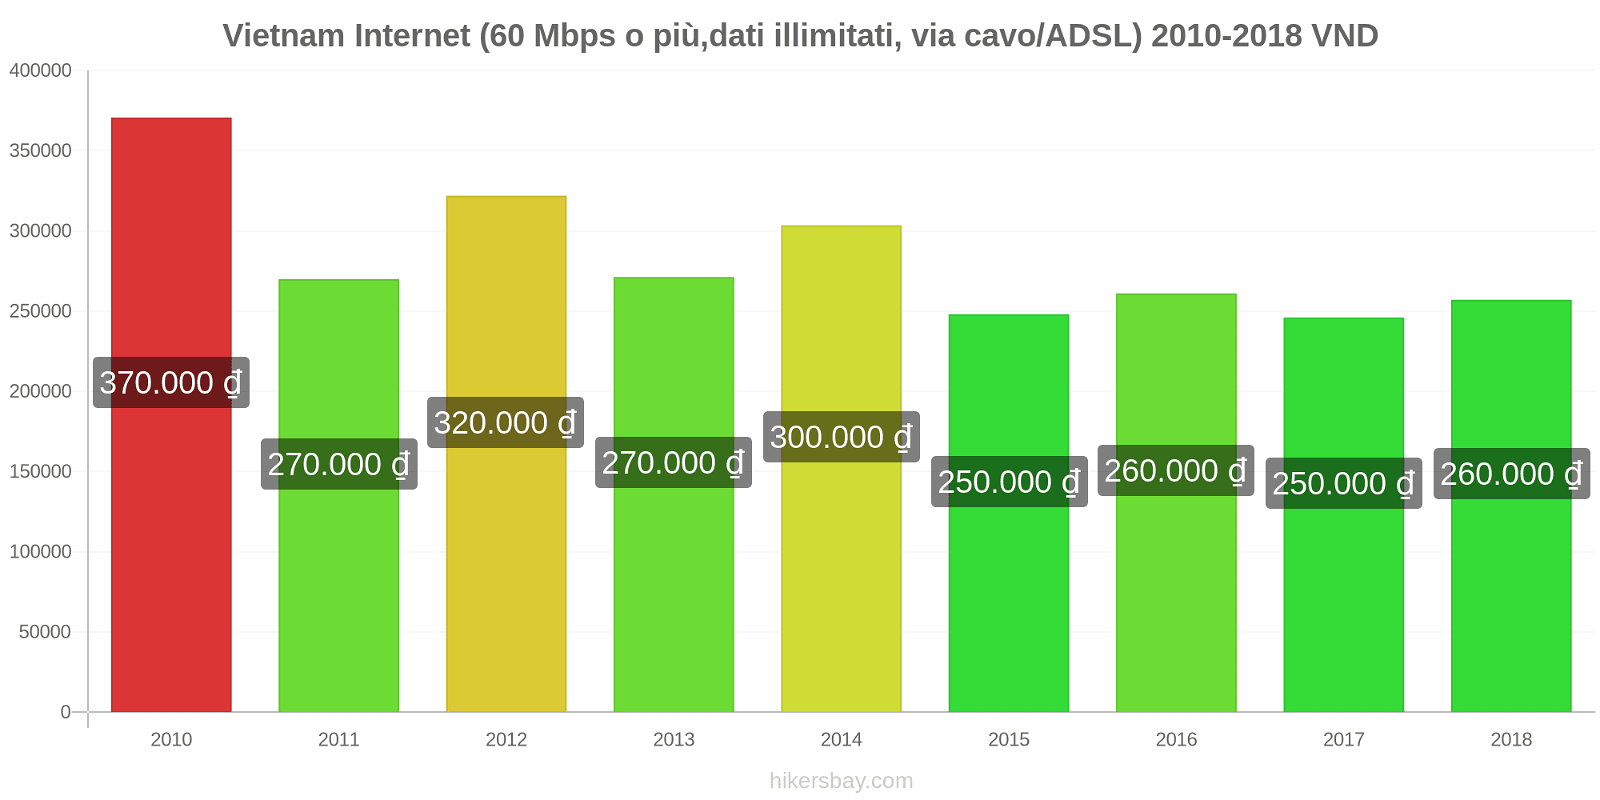 Vietnam cambi di prezzo Internet (60 Mbps o più, dati illimitati, cavo/ADSL) hikersbay.com